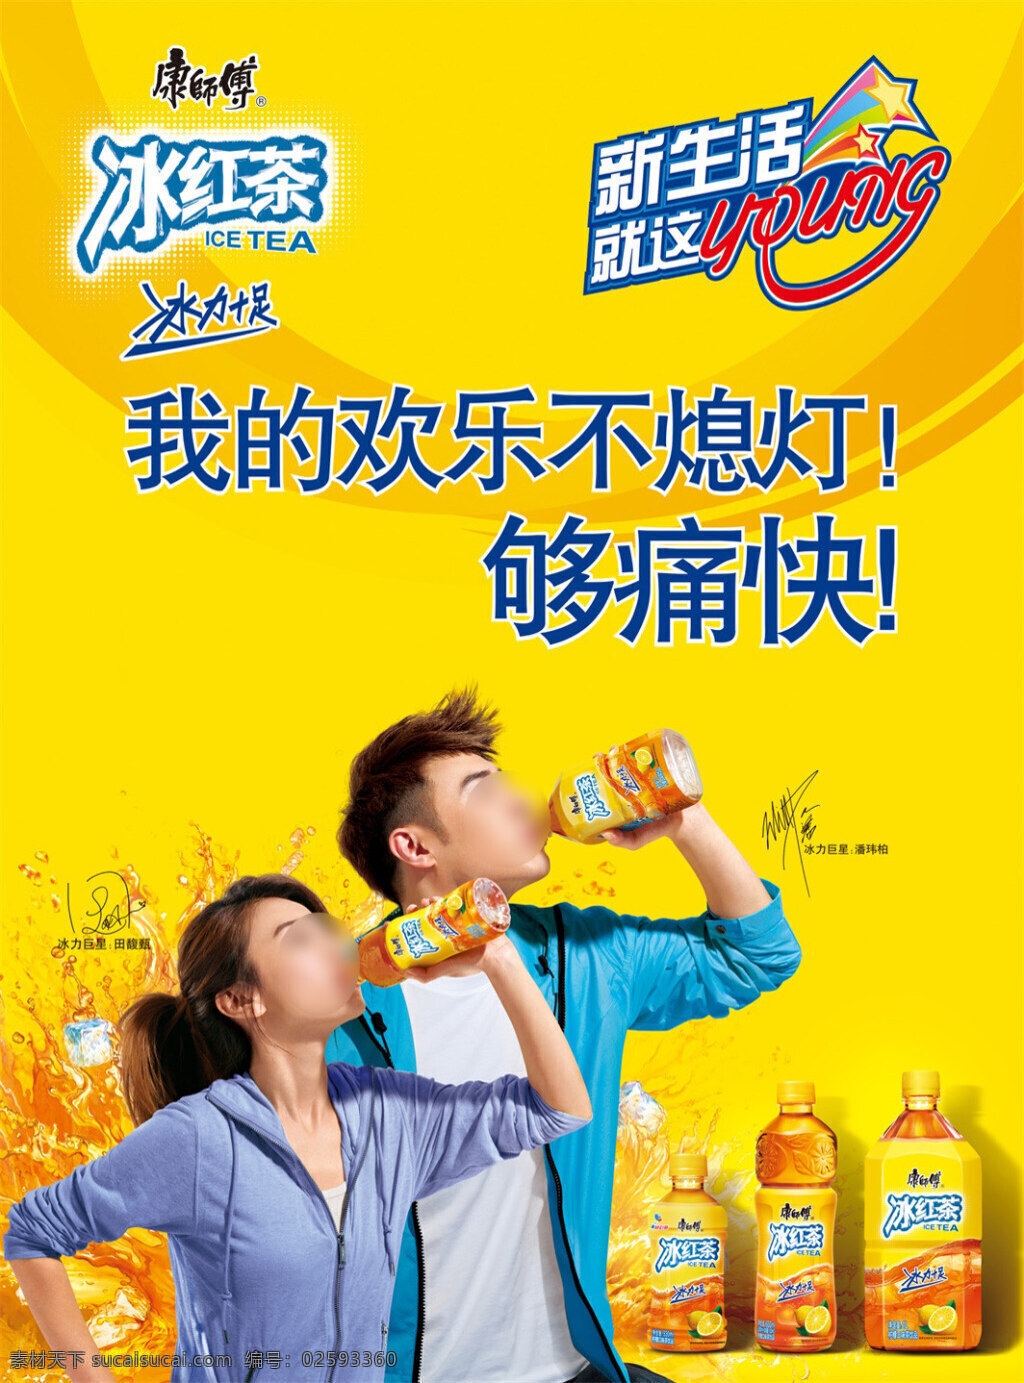 冰红茶 人物 黄色 促销感 饮品广告